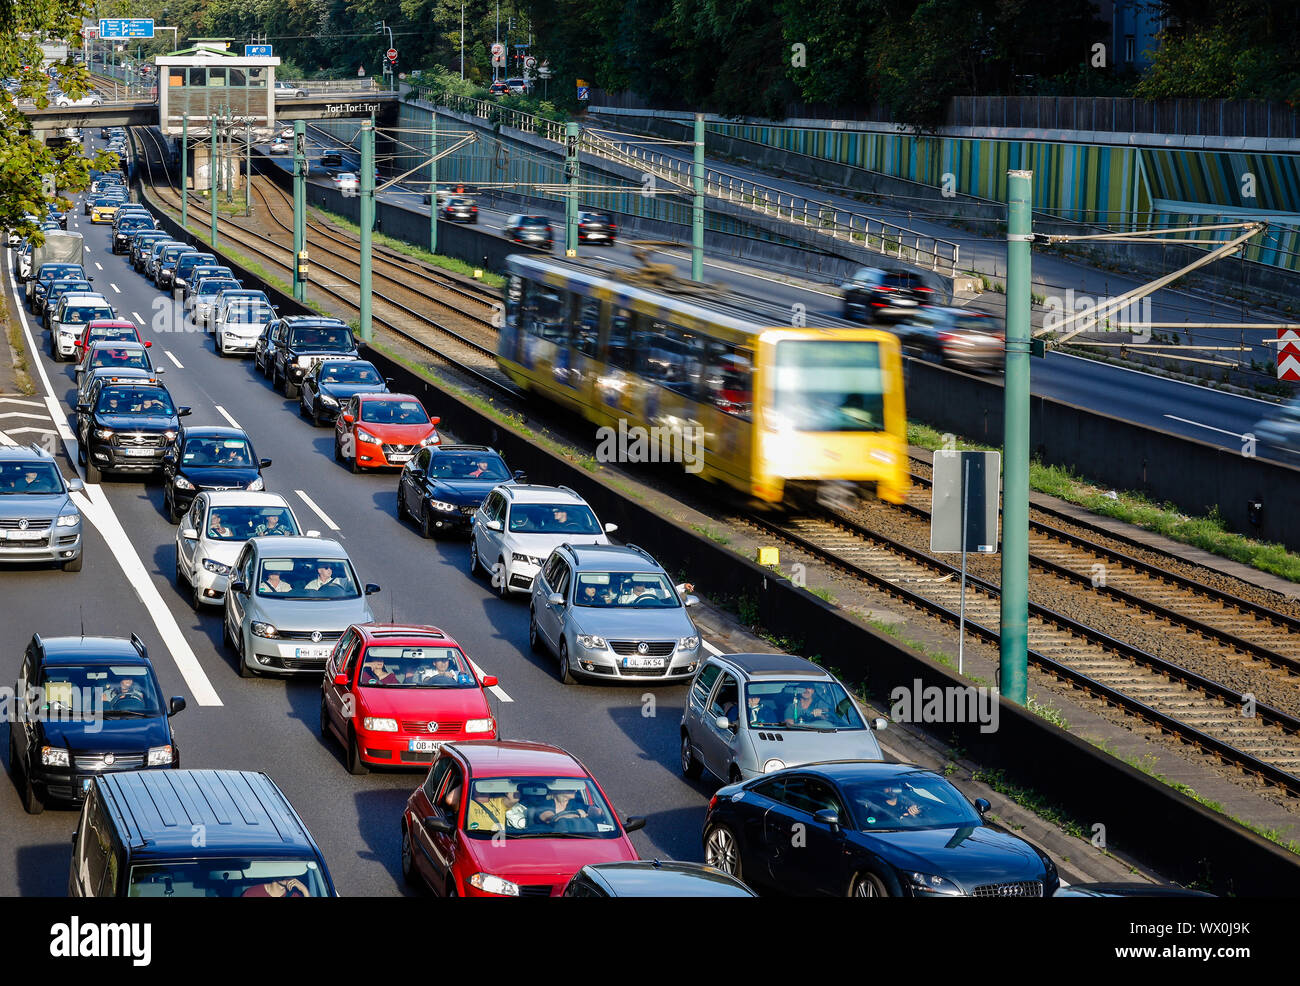 Essen, la zona della Ruhr, Renania settentrionale-Vestfalia, Germania - Incidente la congestione sull'autostrada A40, il trasporto pubblico, qui un tram ha la corsa libera. Essen, RU Foto Stock